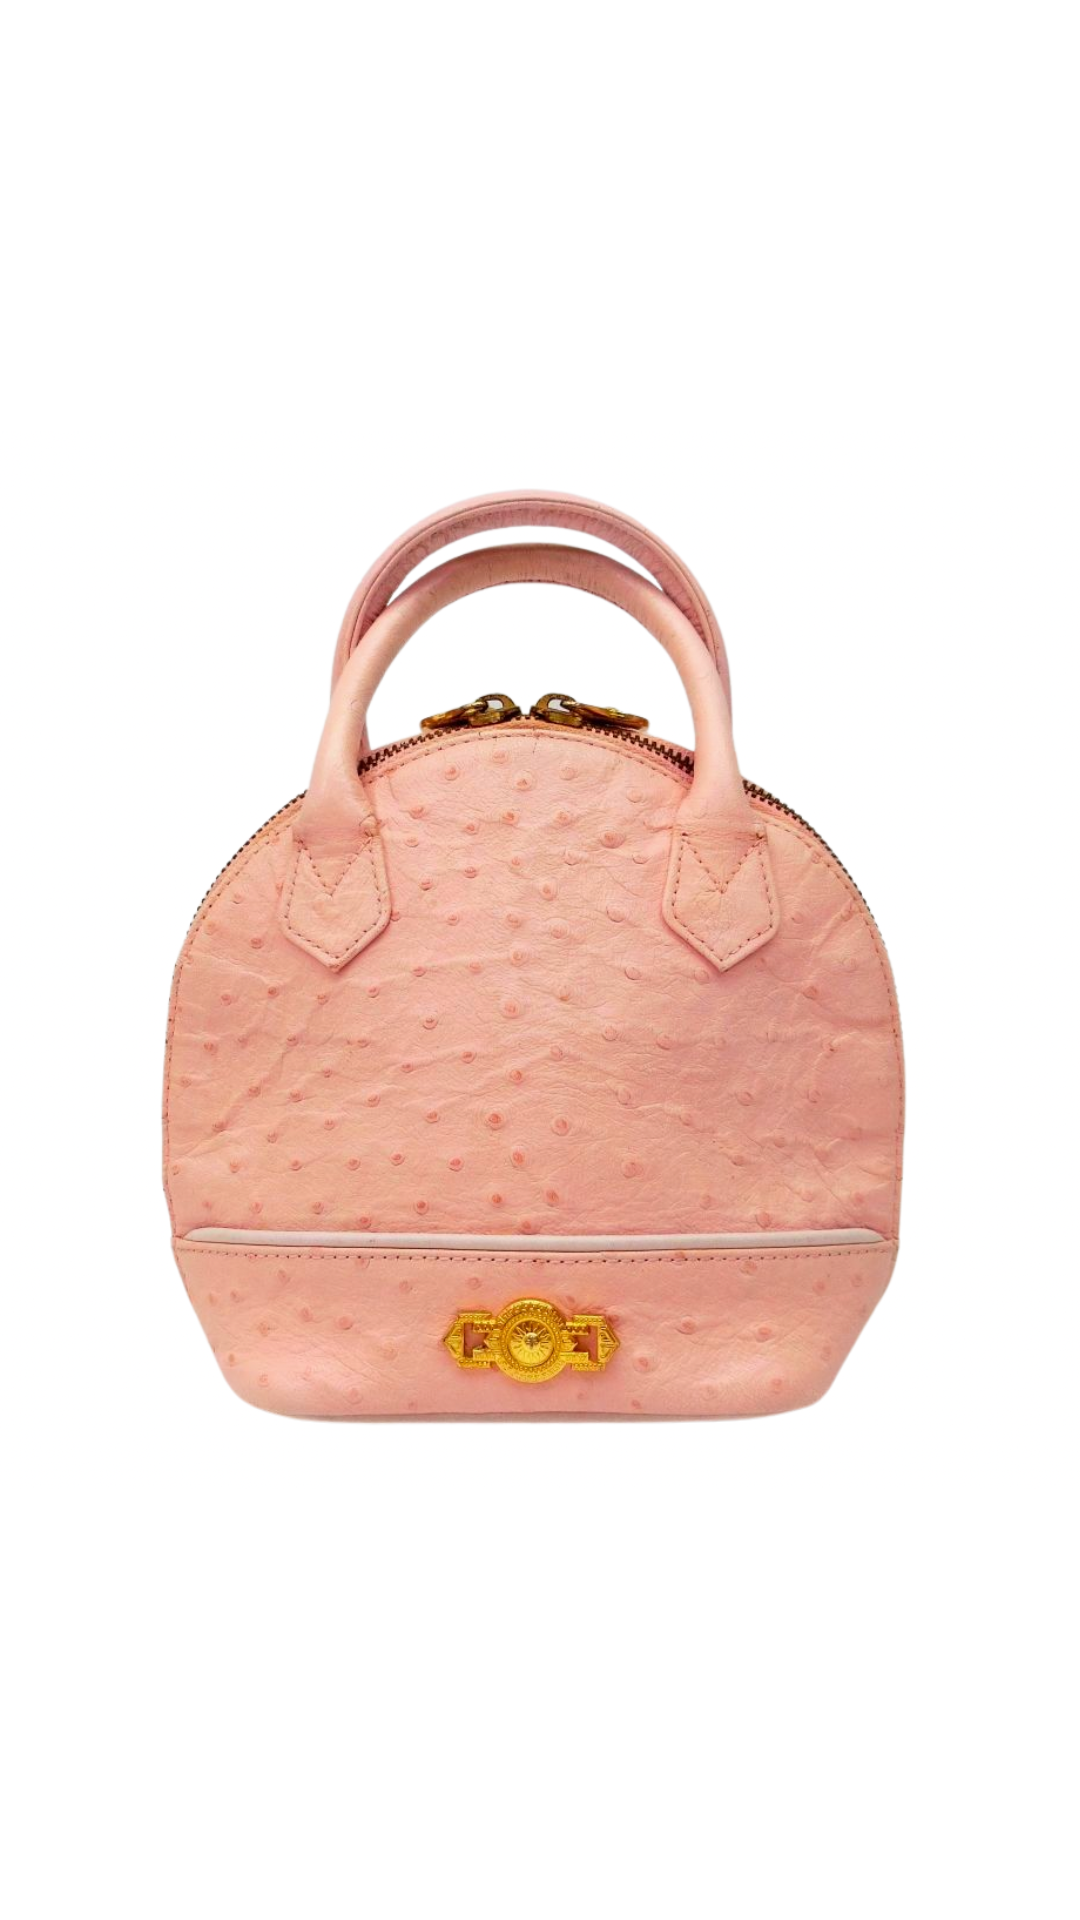 Versace 2000s Pink Ostrich Small Handbag